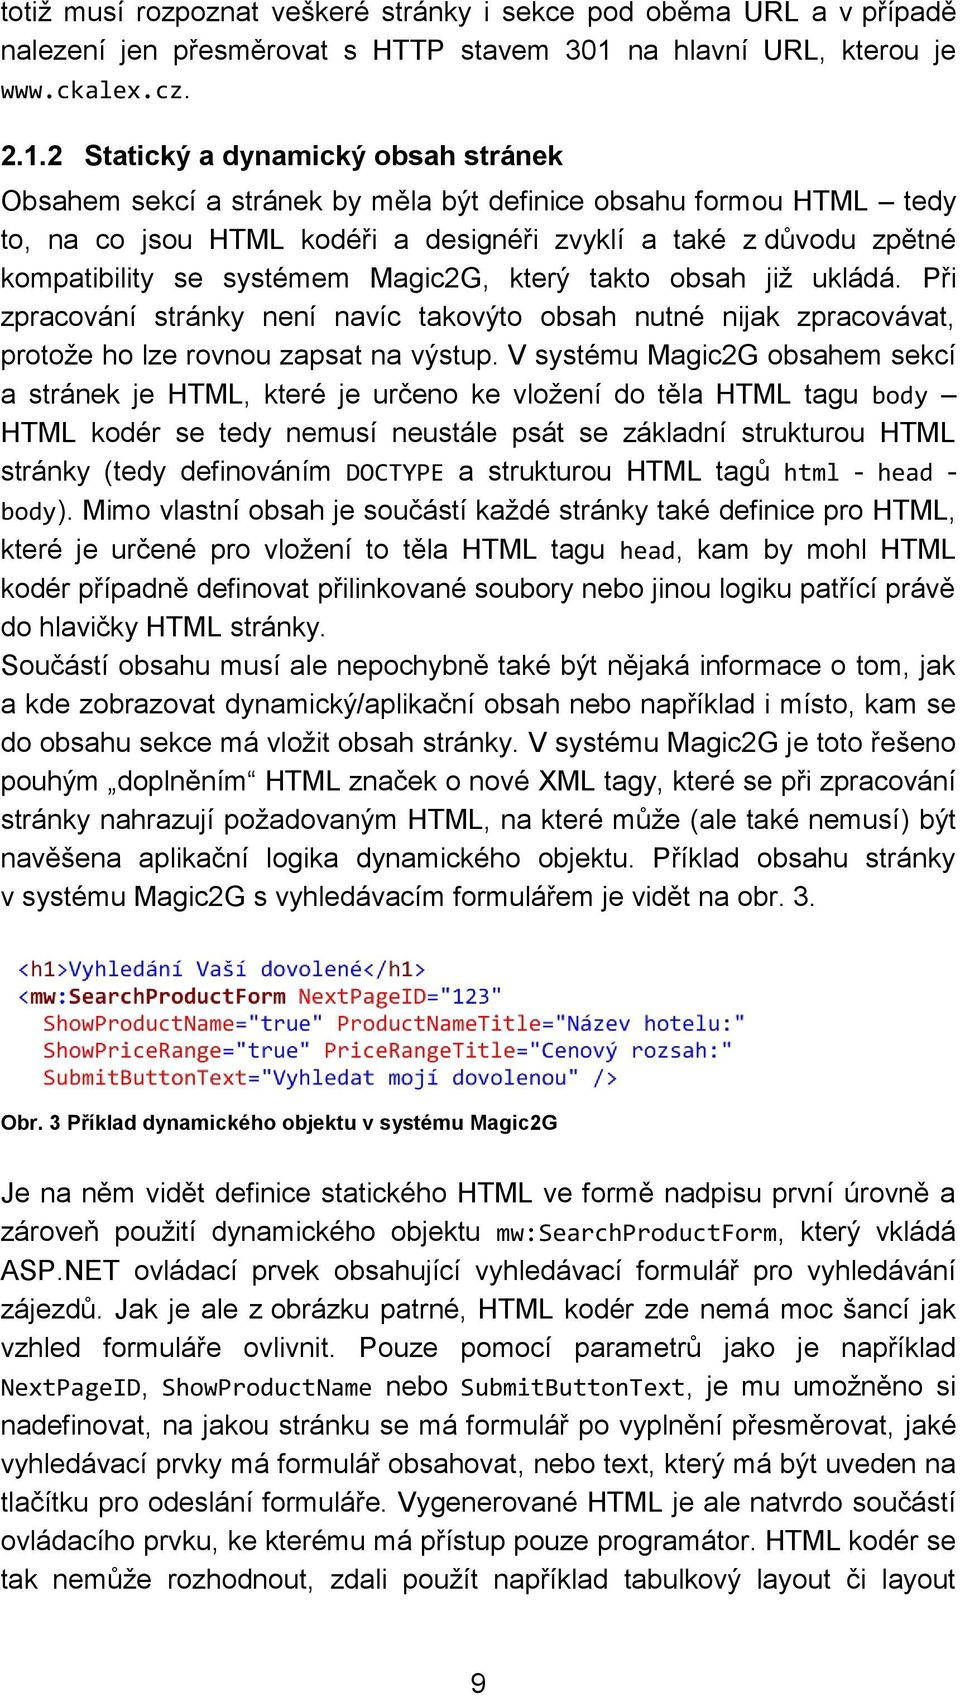 2 Statický a dynamický obsah stránek Obsahem sekcí a stránek by měla být definice obsahu formou HTML tedy to, na co jsou HTML kodéři a designéři zvyklí a také z důvodu zpětné kompatibility se